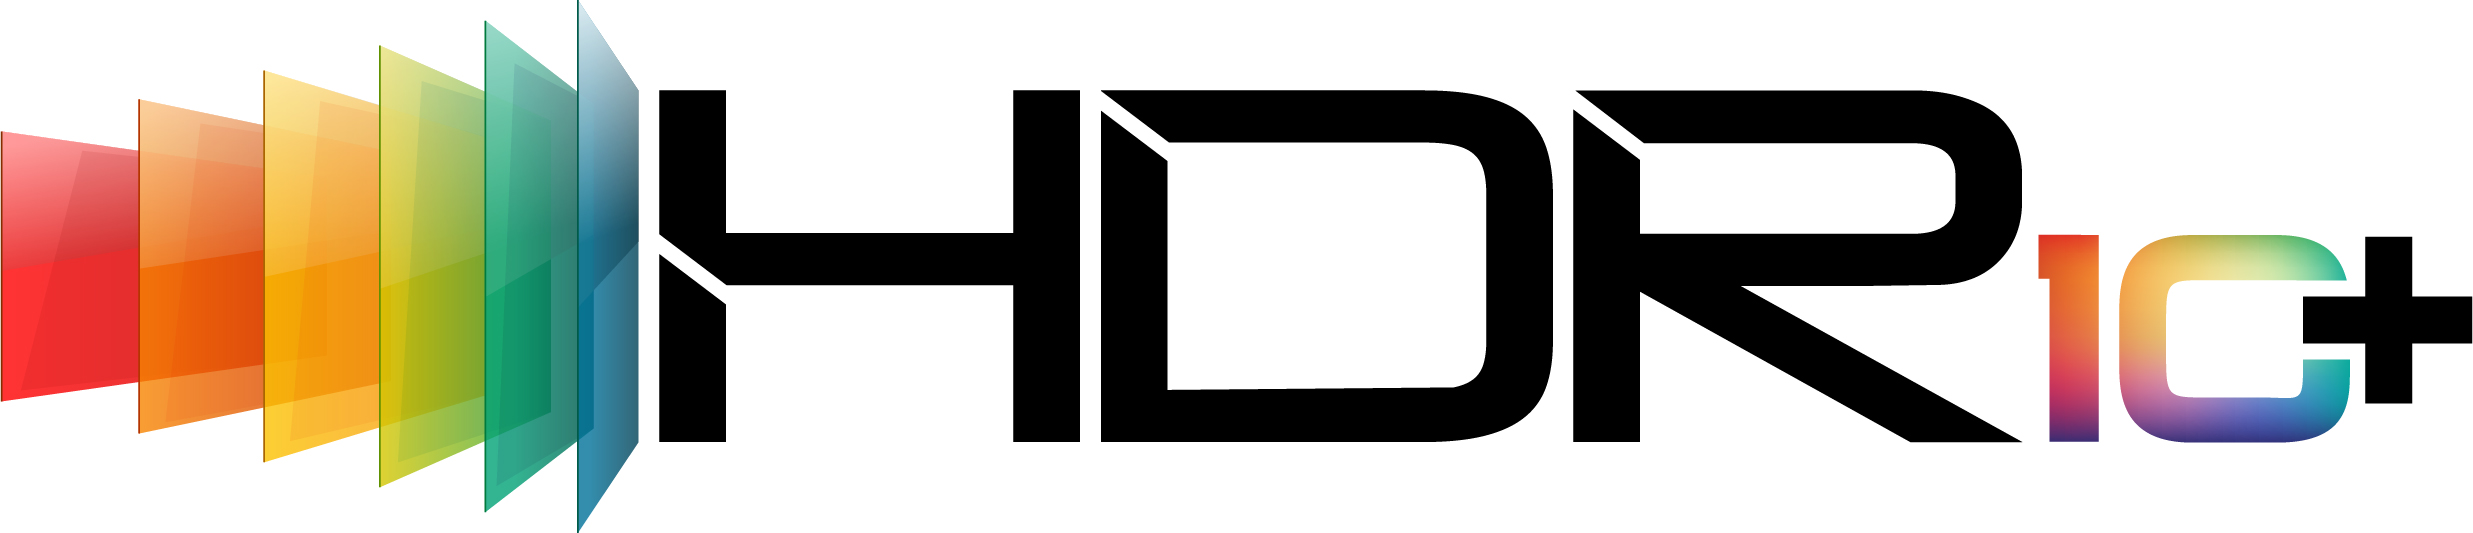 استاندارد HDR10 پلاس